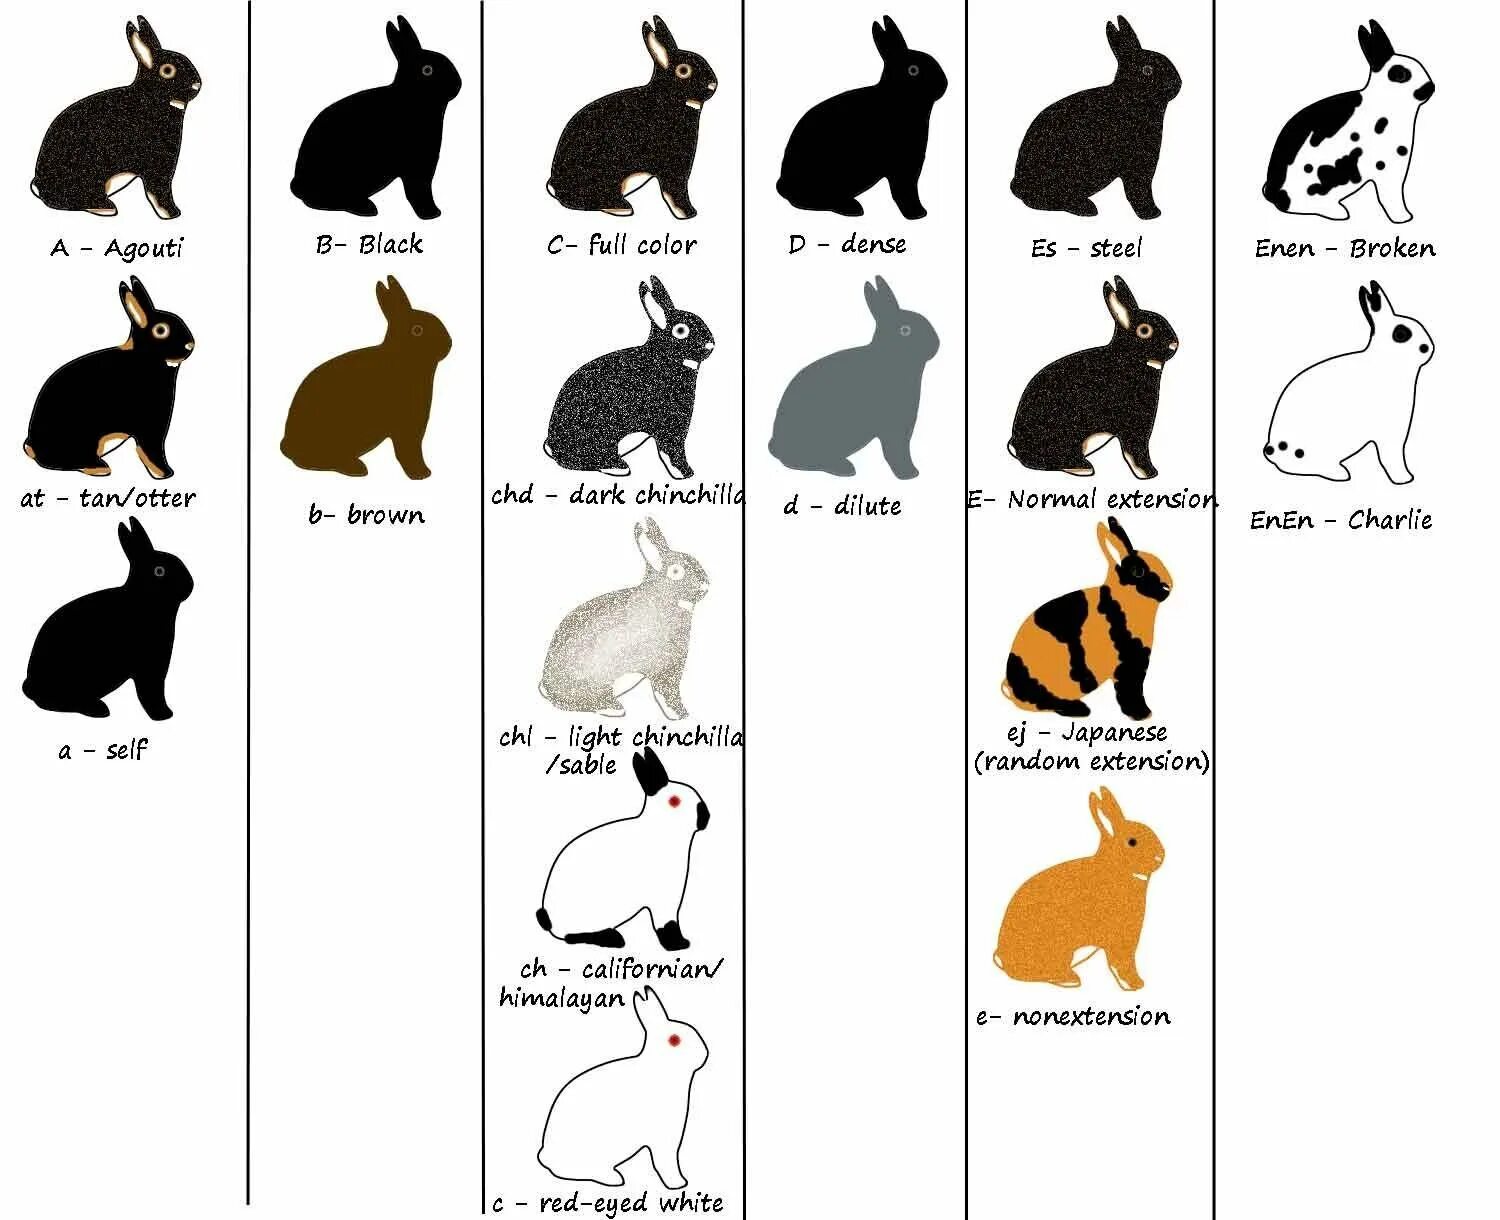 Окрас агути у кроликов. Генетика кроликов окрасы. Генотипы определяющие окраску кроликов агути. Схема скрещивания кроликов.